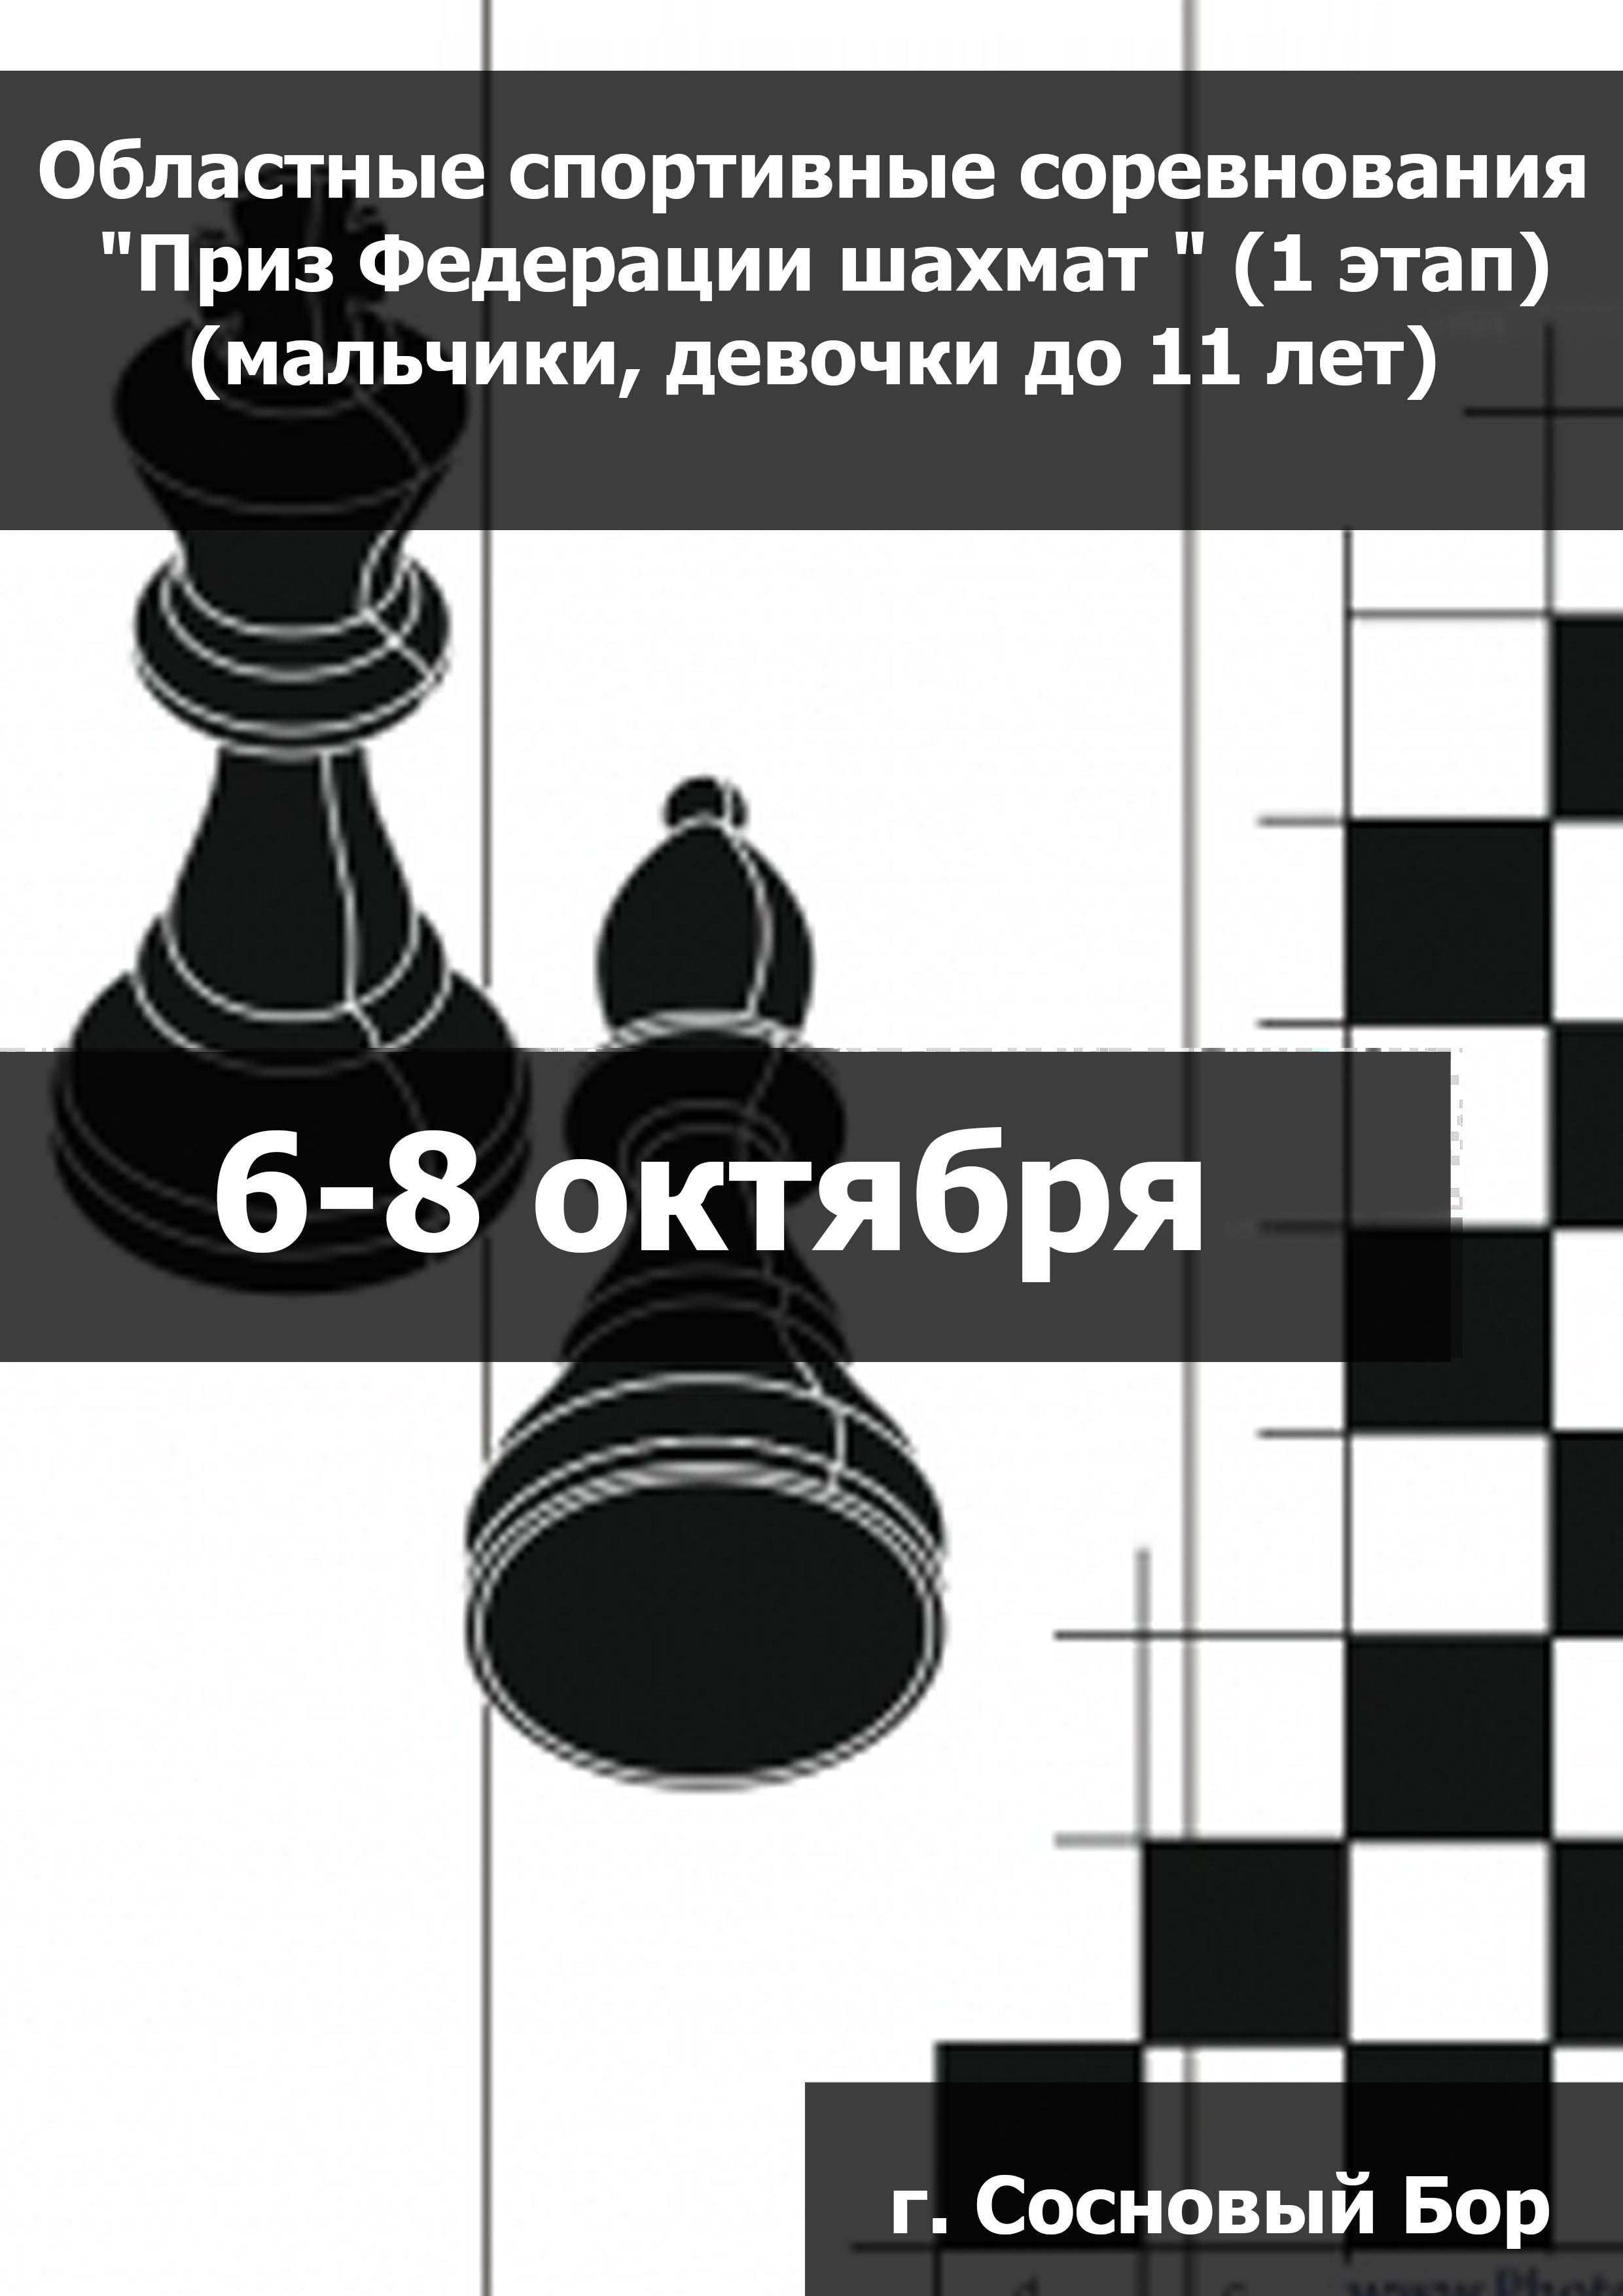 Областные спортивные соревнования "Приз Федерации шахмат " (1 этап) (мальчики, девочки до 11 лет) 6  жовтня
 2023  рік
 